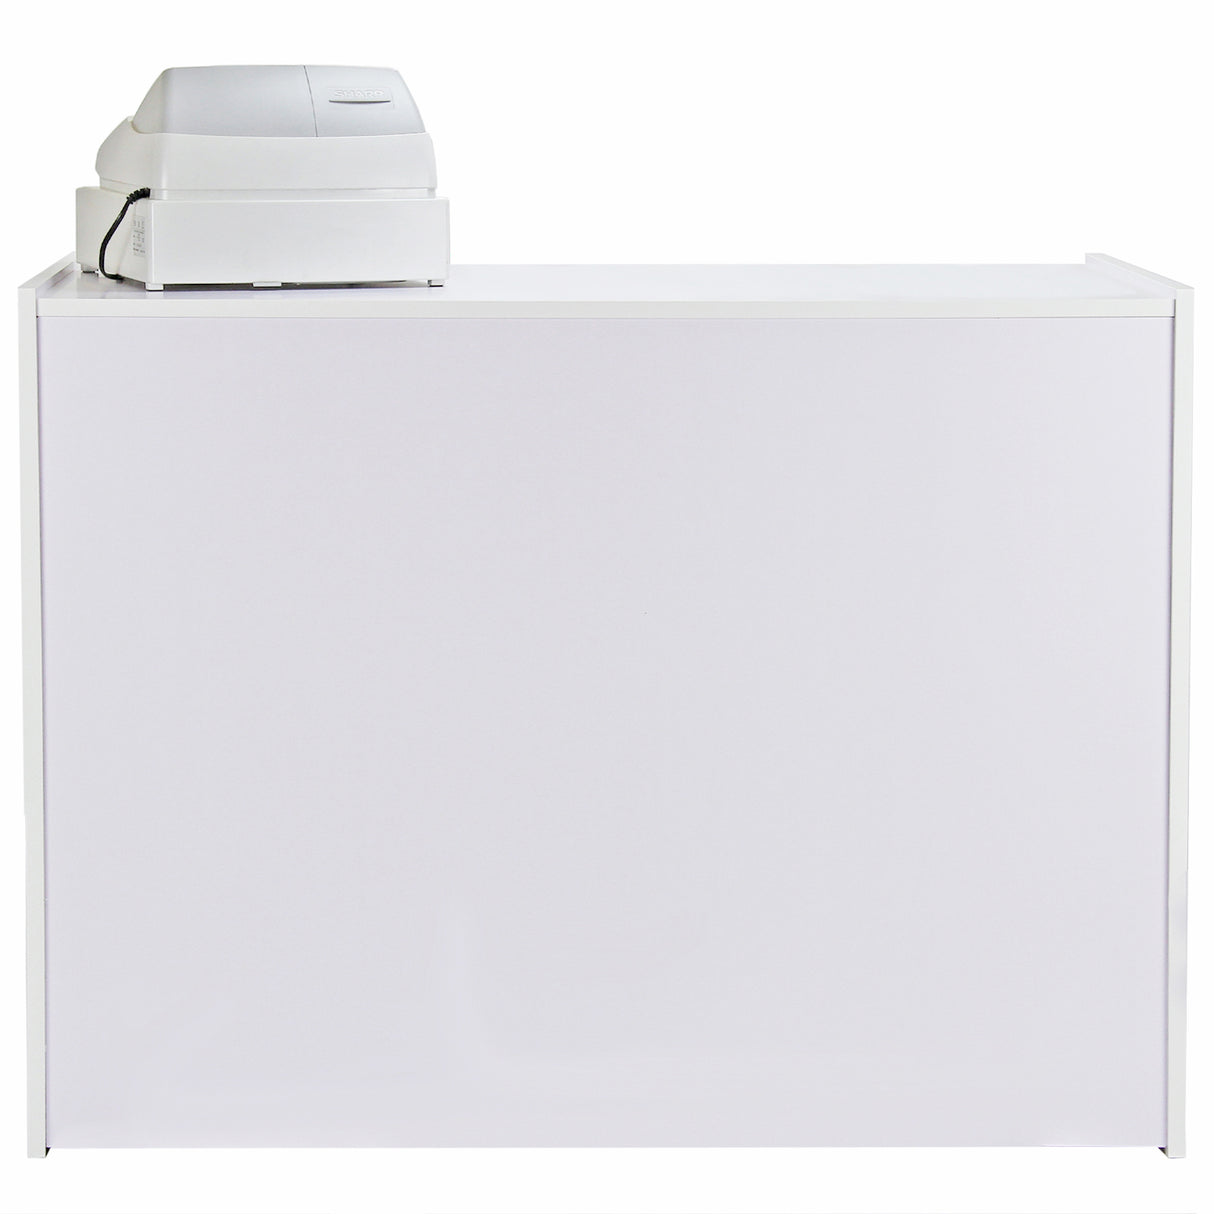 A1200 Retail Shop Counter - Brilliant White